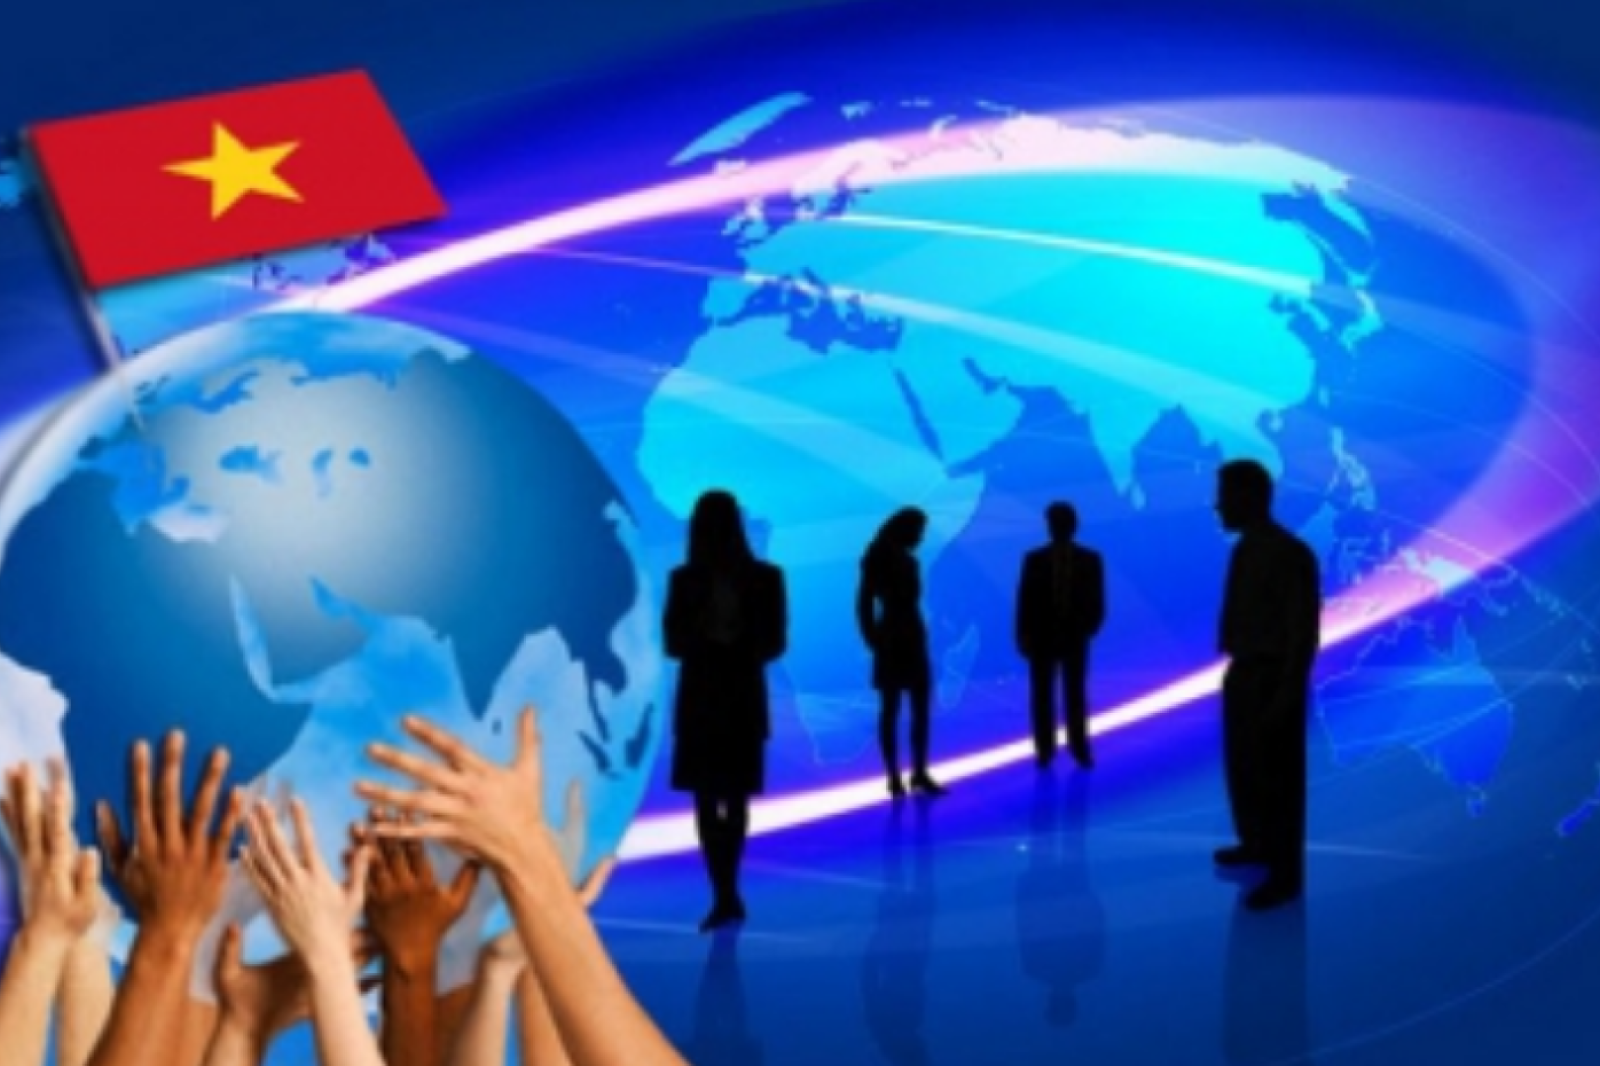 Minh Trị Duy tân: Ý nghĩa hiện đại cho Việt Nam trong bối cảnh phát triển và hội nhập toàn cầu 